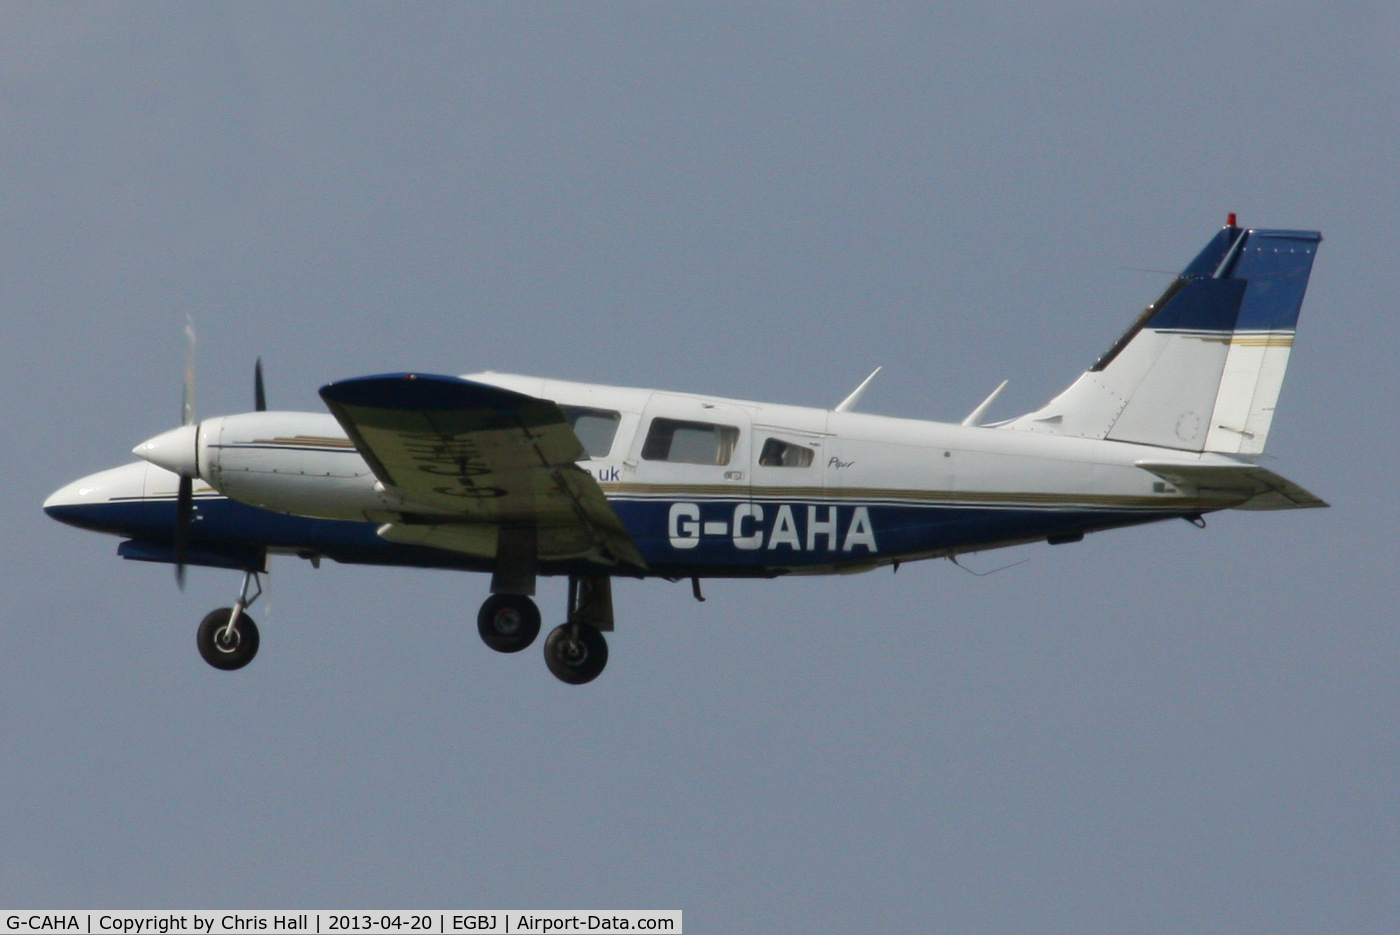 G-CAHA, 1977 Piper PA-34-200T Seneca II C/N 34-7770010, TDG Leasing